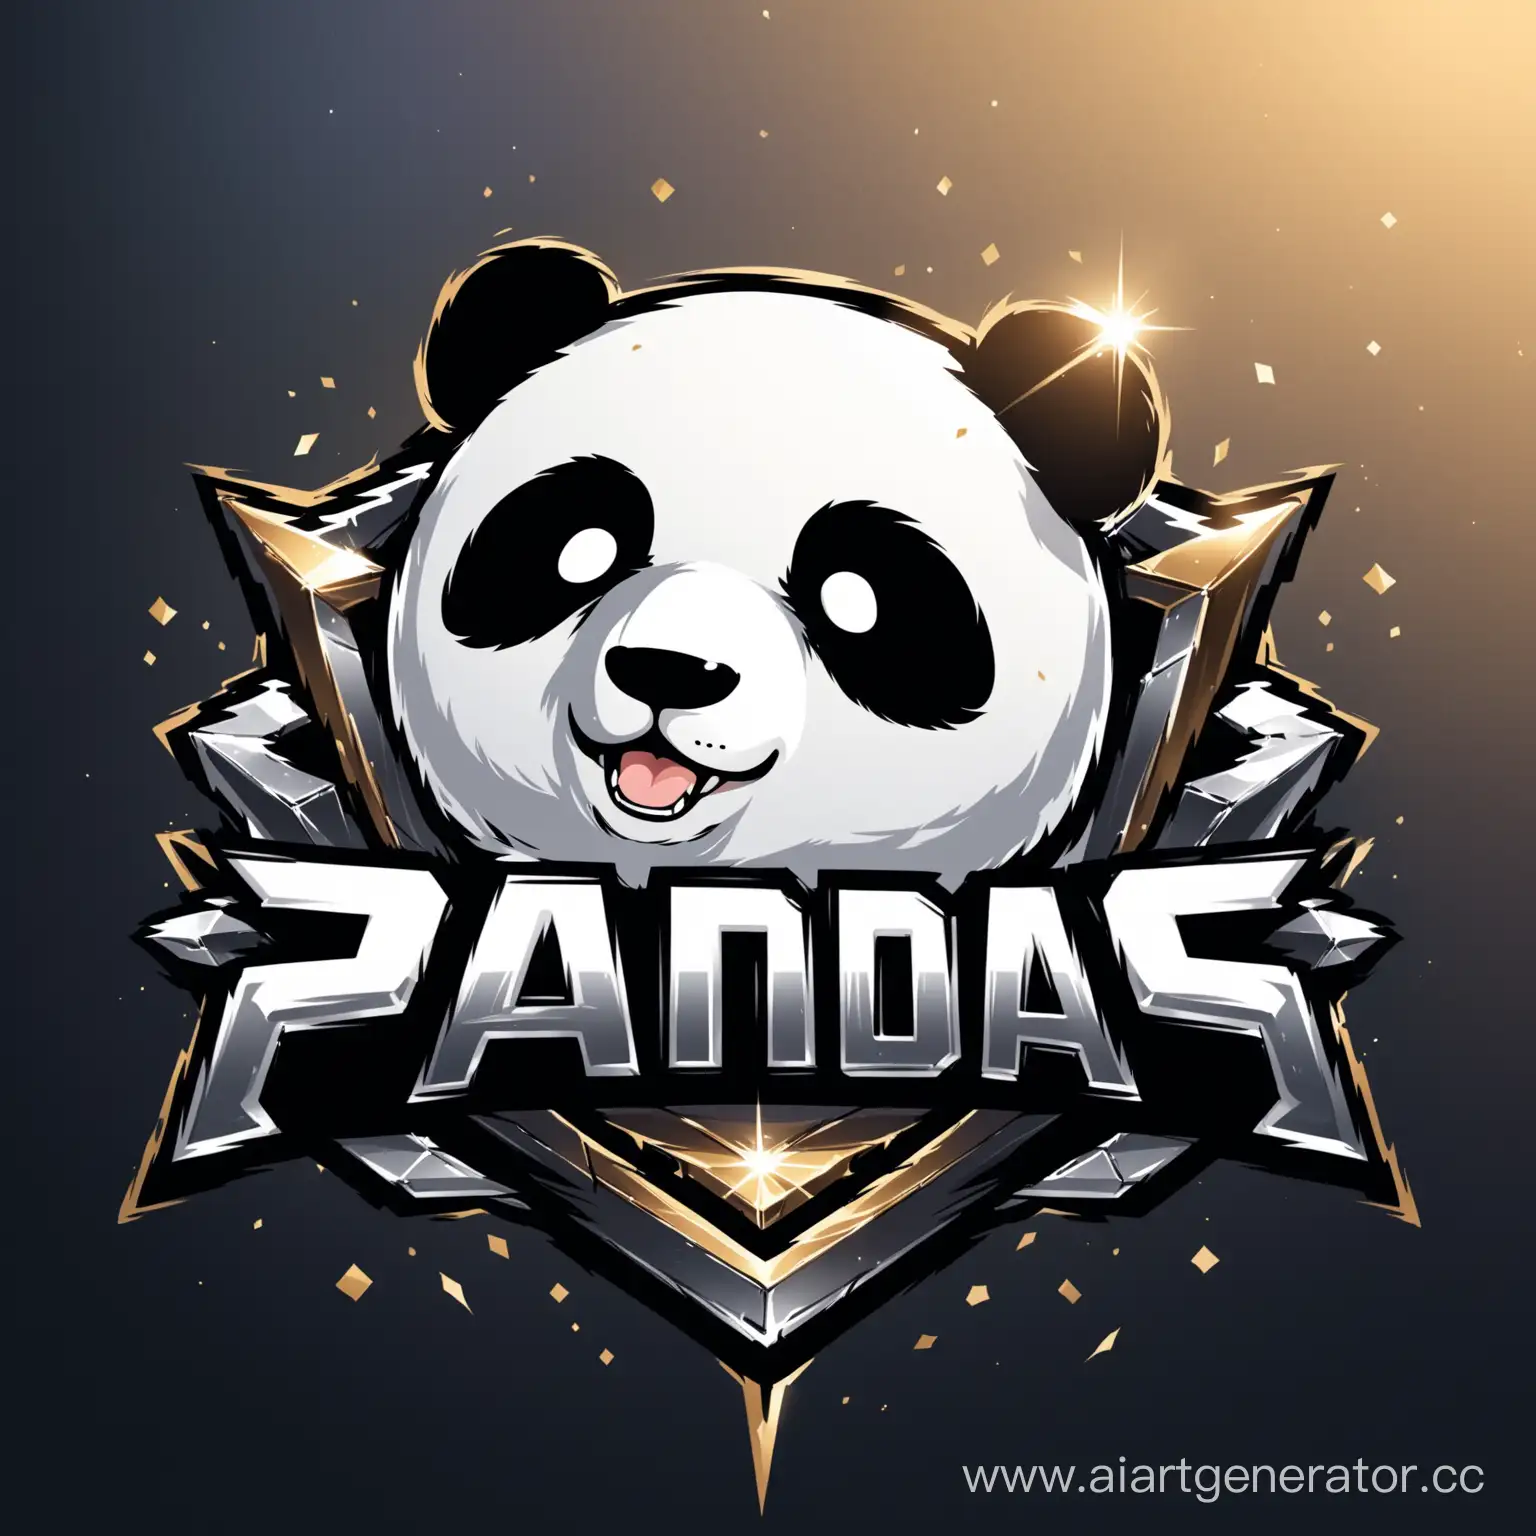 Metallic-Panda-Esports-Logo-in-Urban-Setting